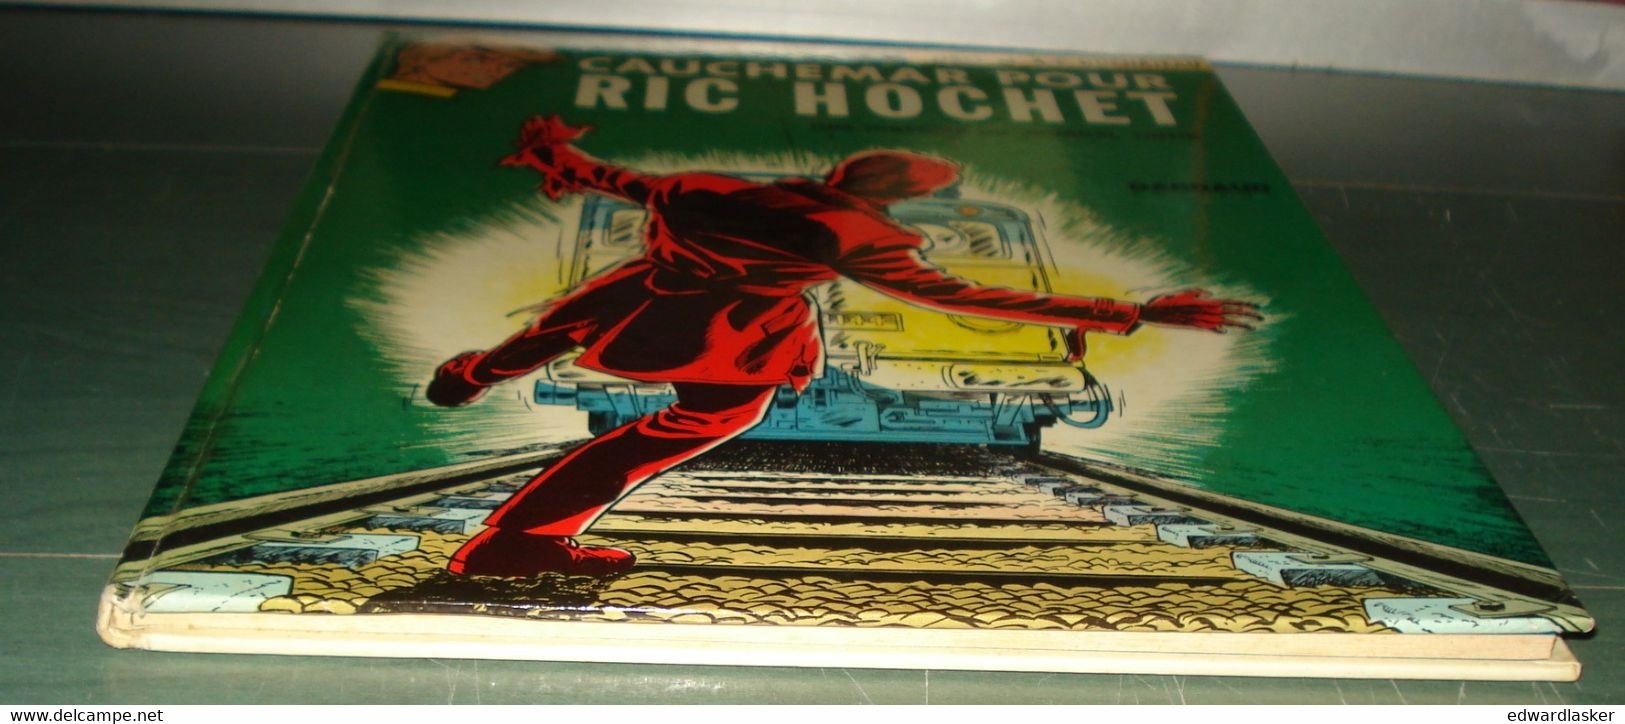 RIC HOCHET 11 : Cauchemar pour Ric Hochet /Tibet Duchateau - 2e édition 1973